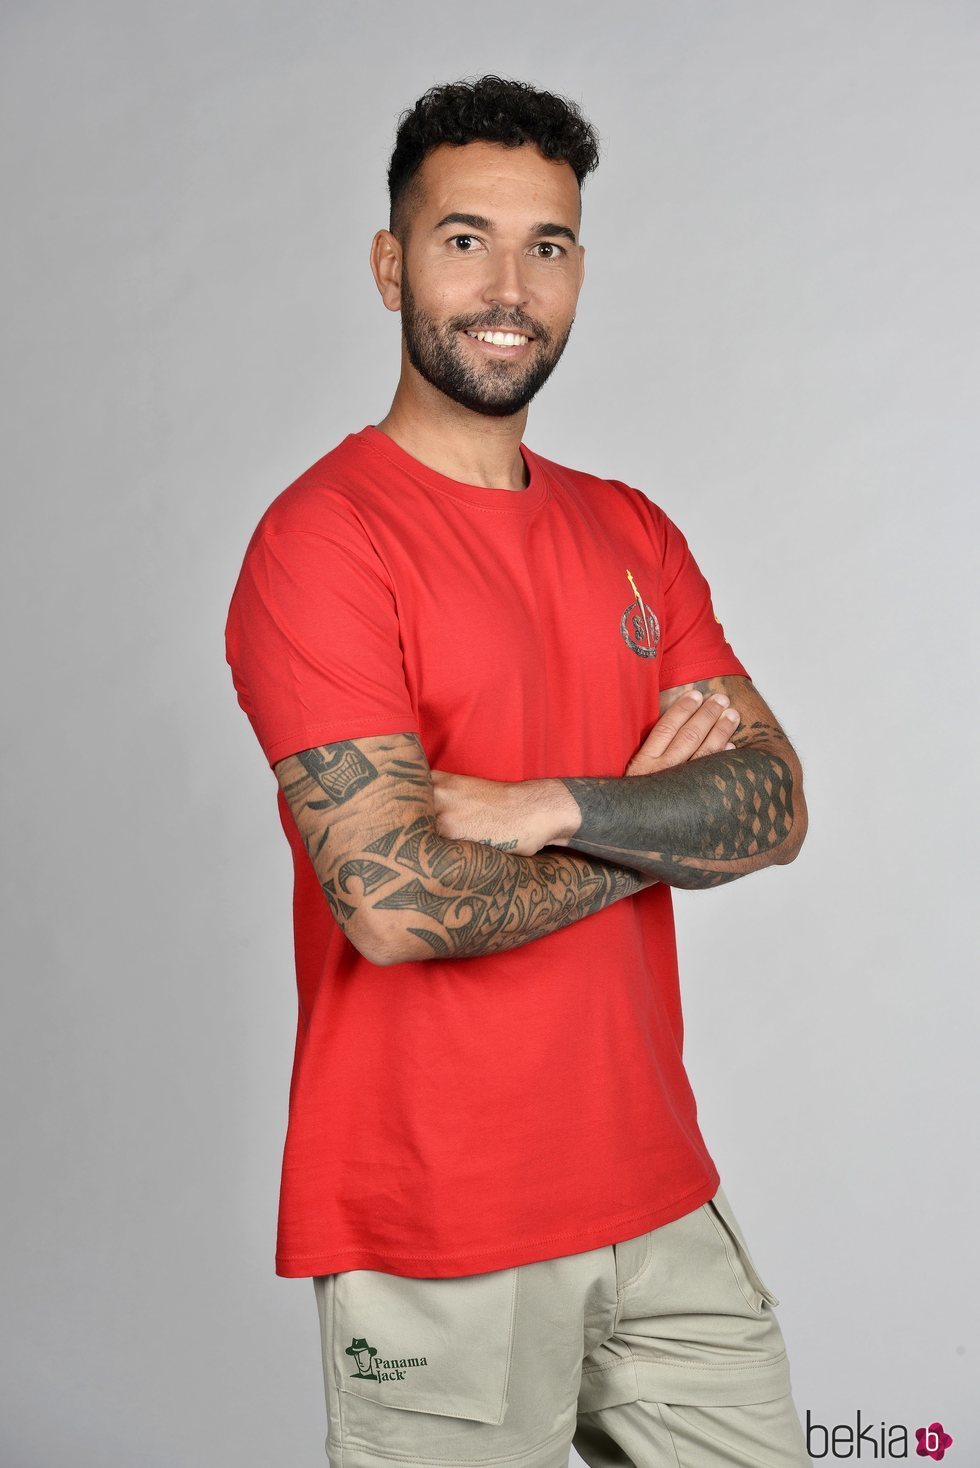 Omar Sánchez posando en la foto oficial de 'Supervivientes 2021'